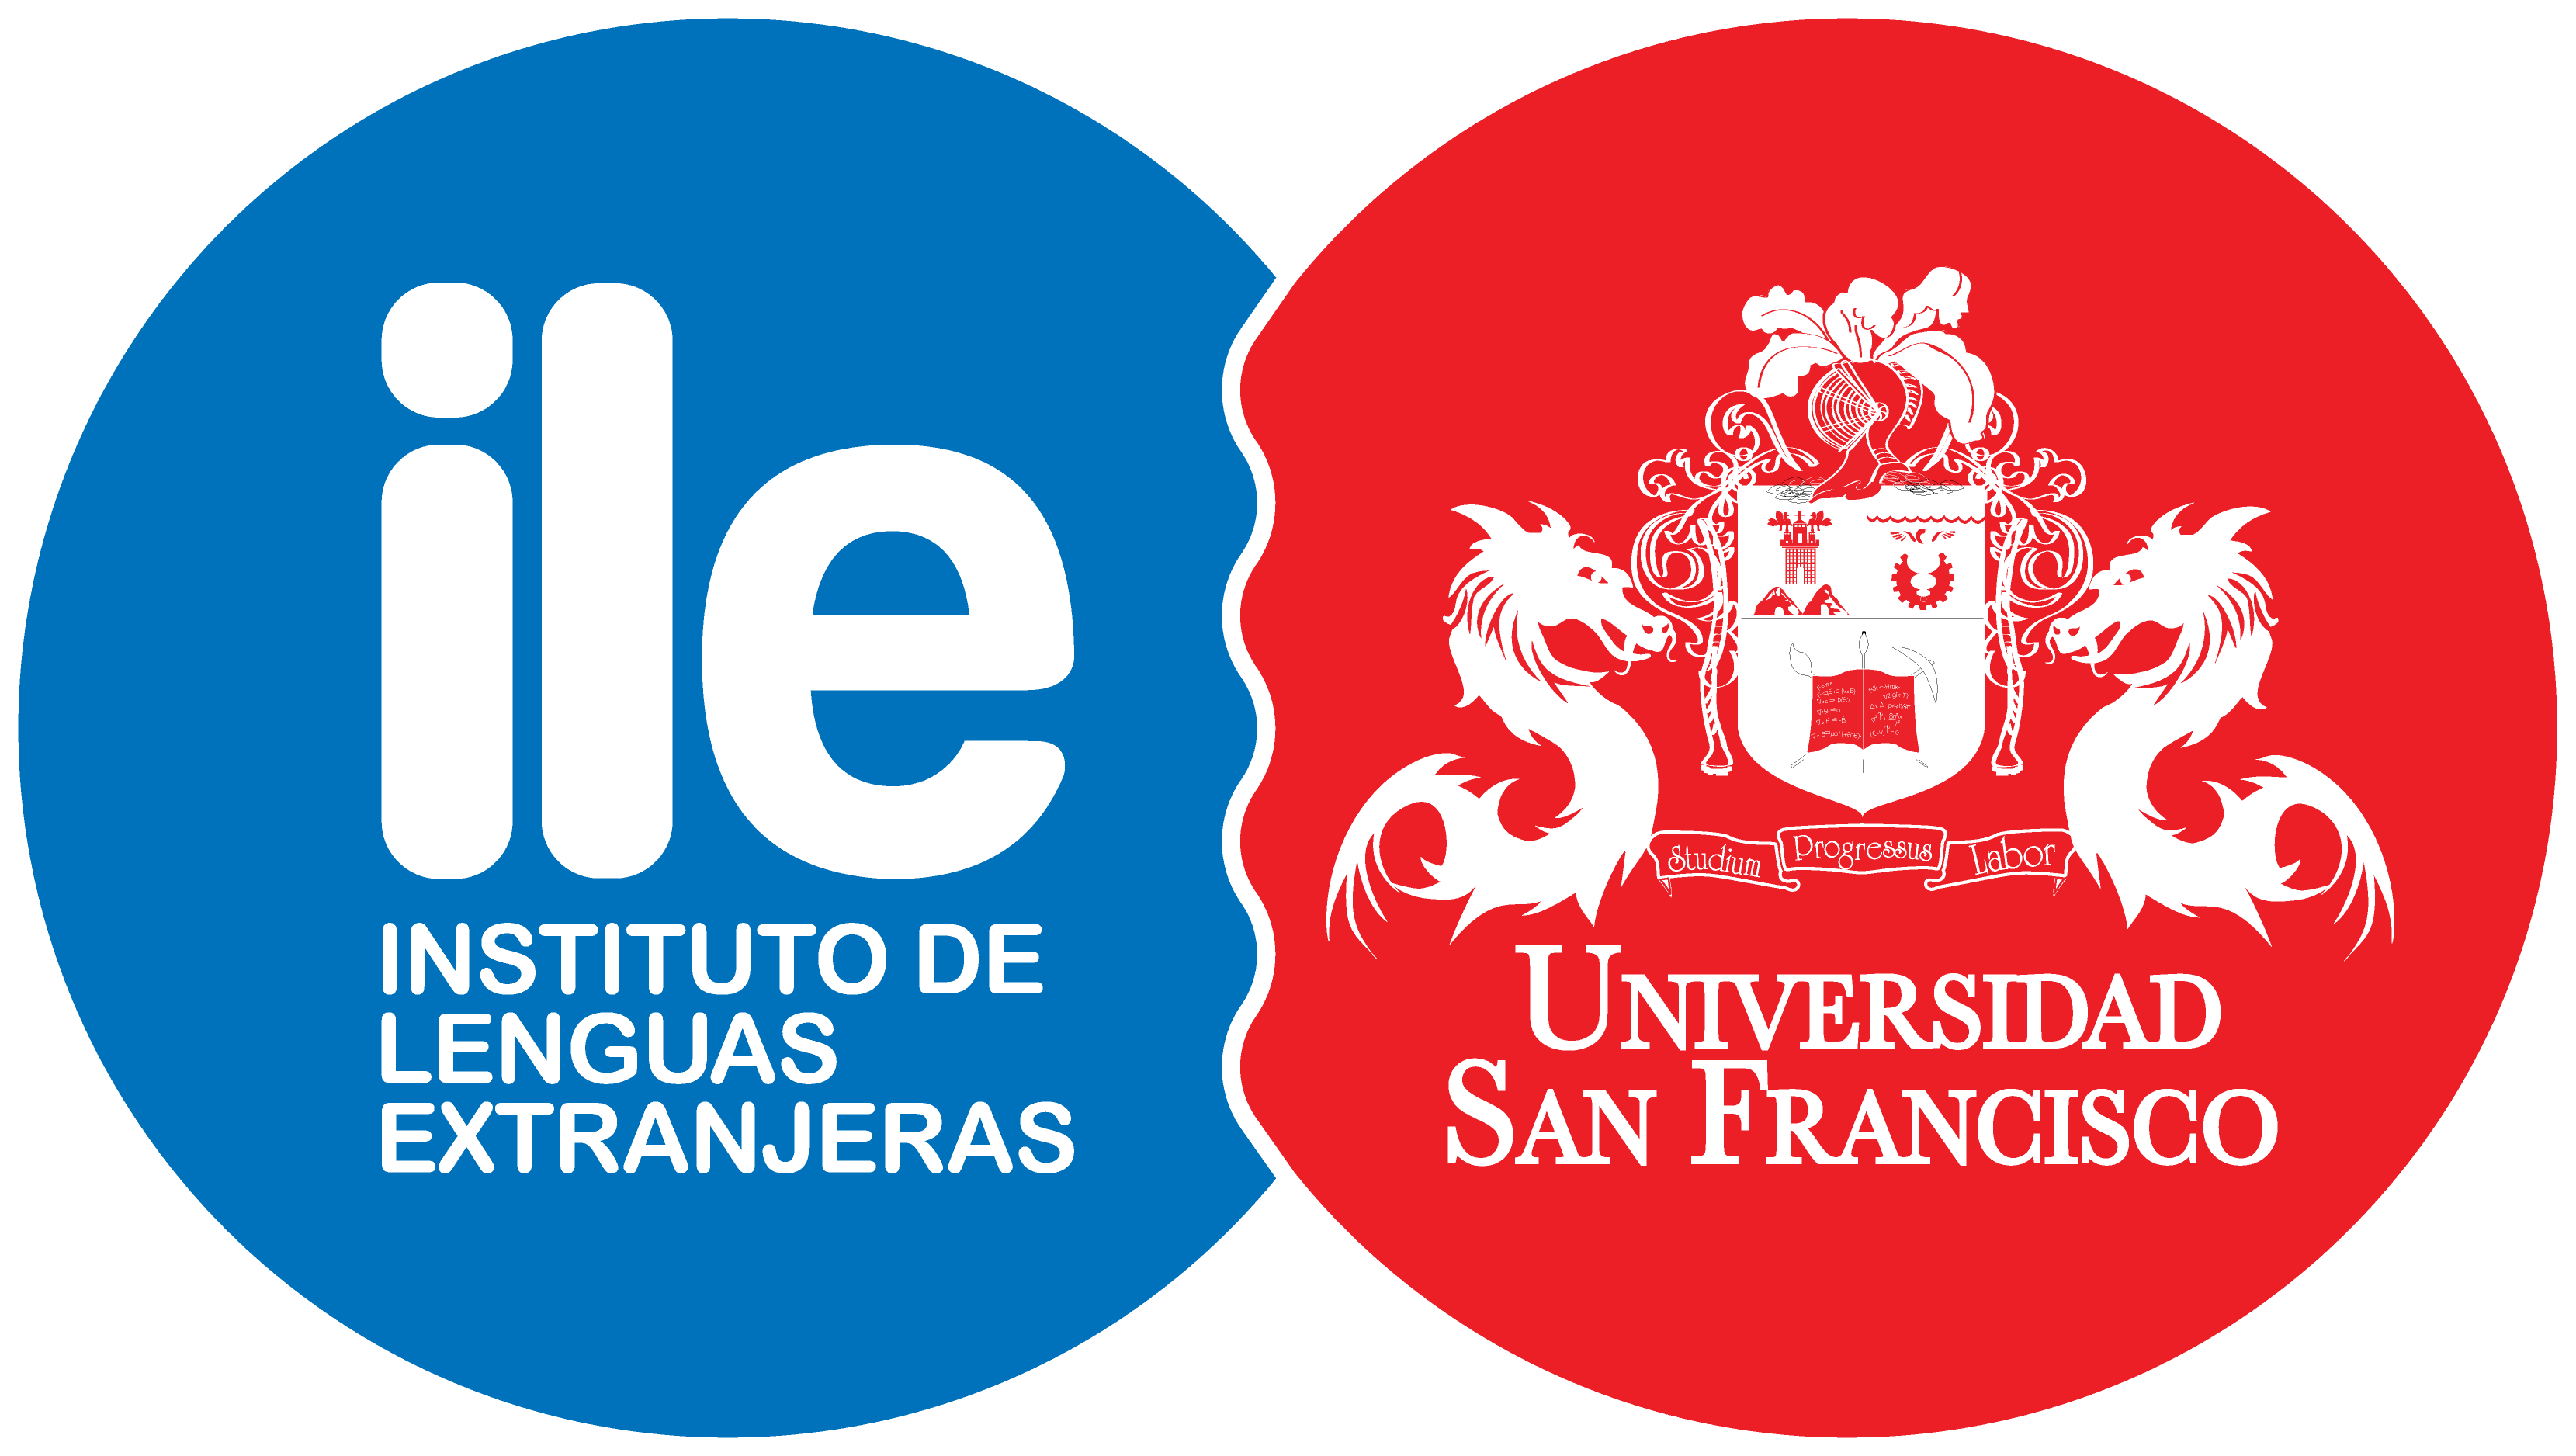 ILE - Instituto de Lenguas Extranjeras